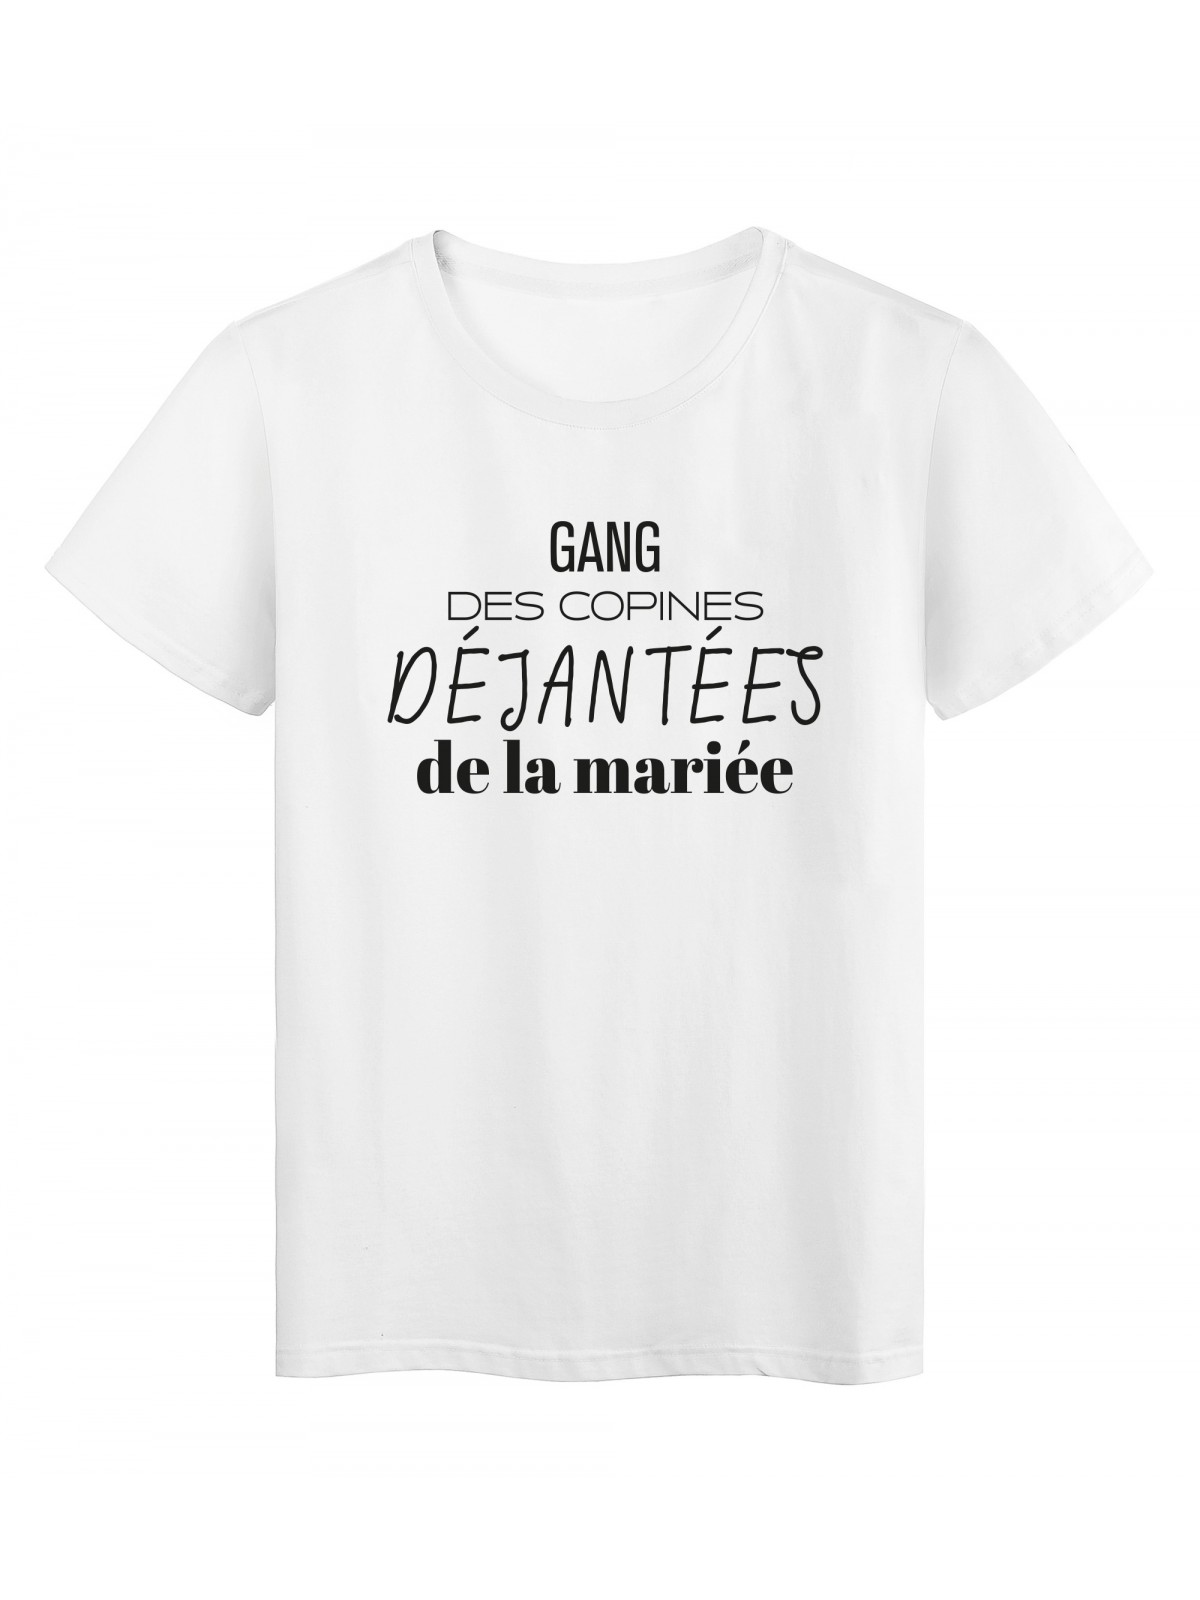 T-Shirt imprimÃ© citation humour Gang dÃ©jantÃ©es de la mariÃ©e